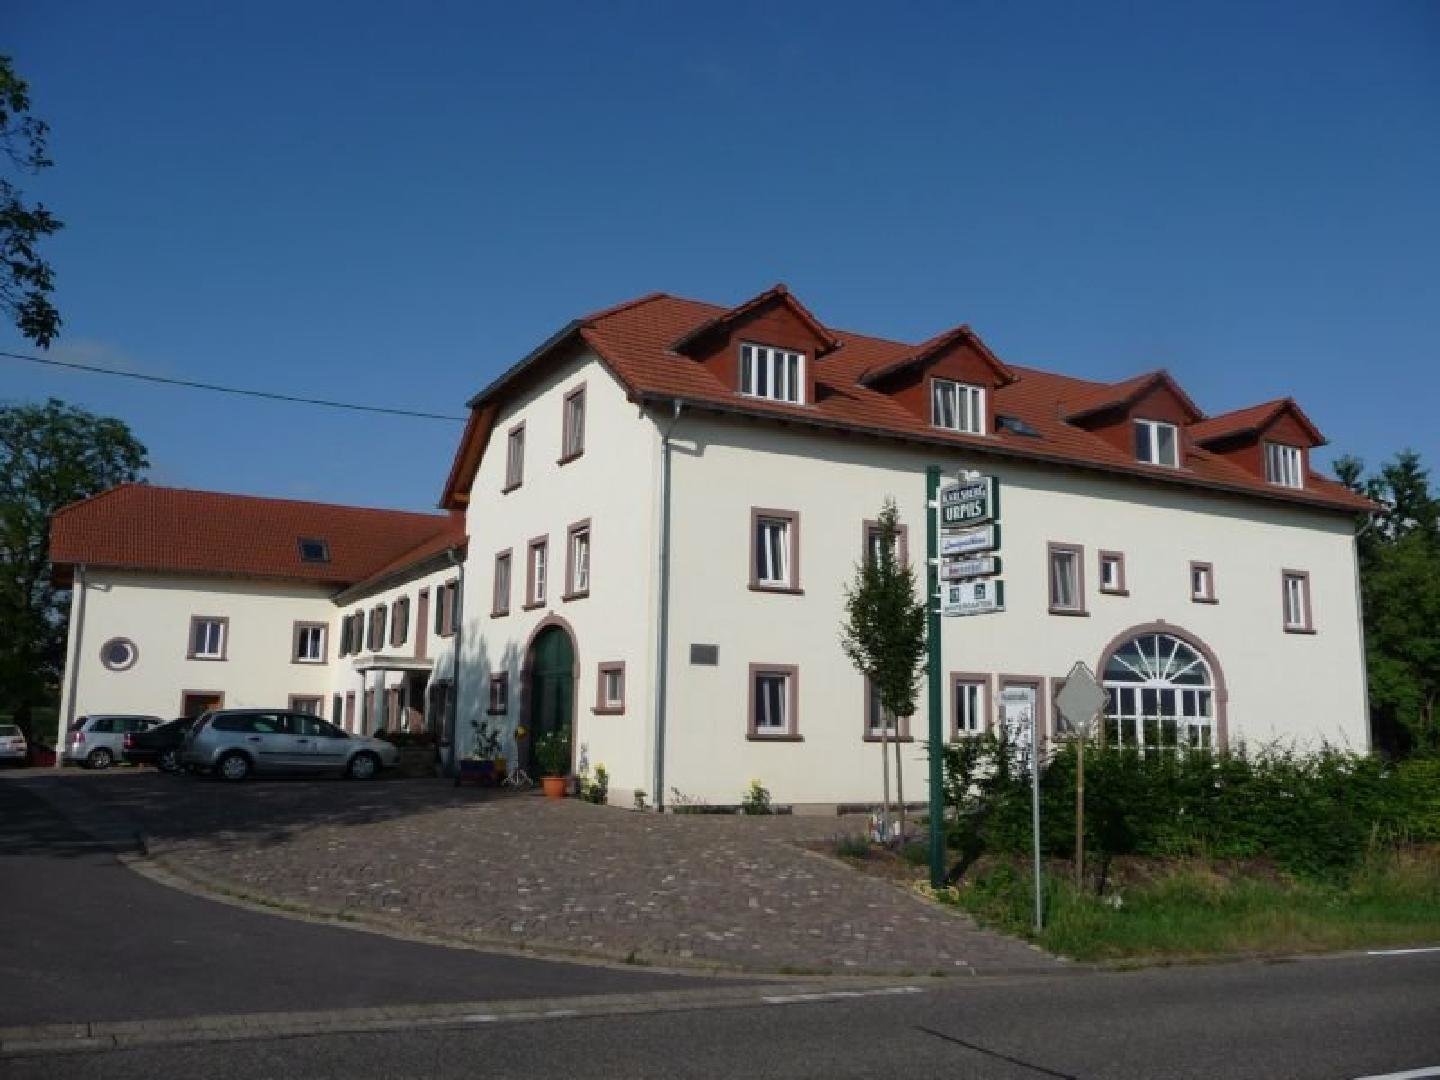 4 Tage Wander-Erlebnis Saar-Hunsrück-Steig – Hotel Sonnenhof  (3 Sterne) in Perl, Saarland inkl. Halbpension